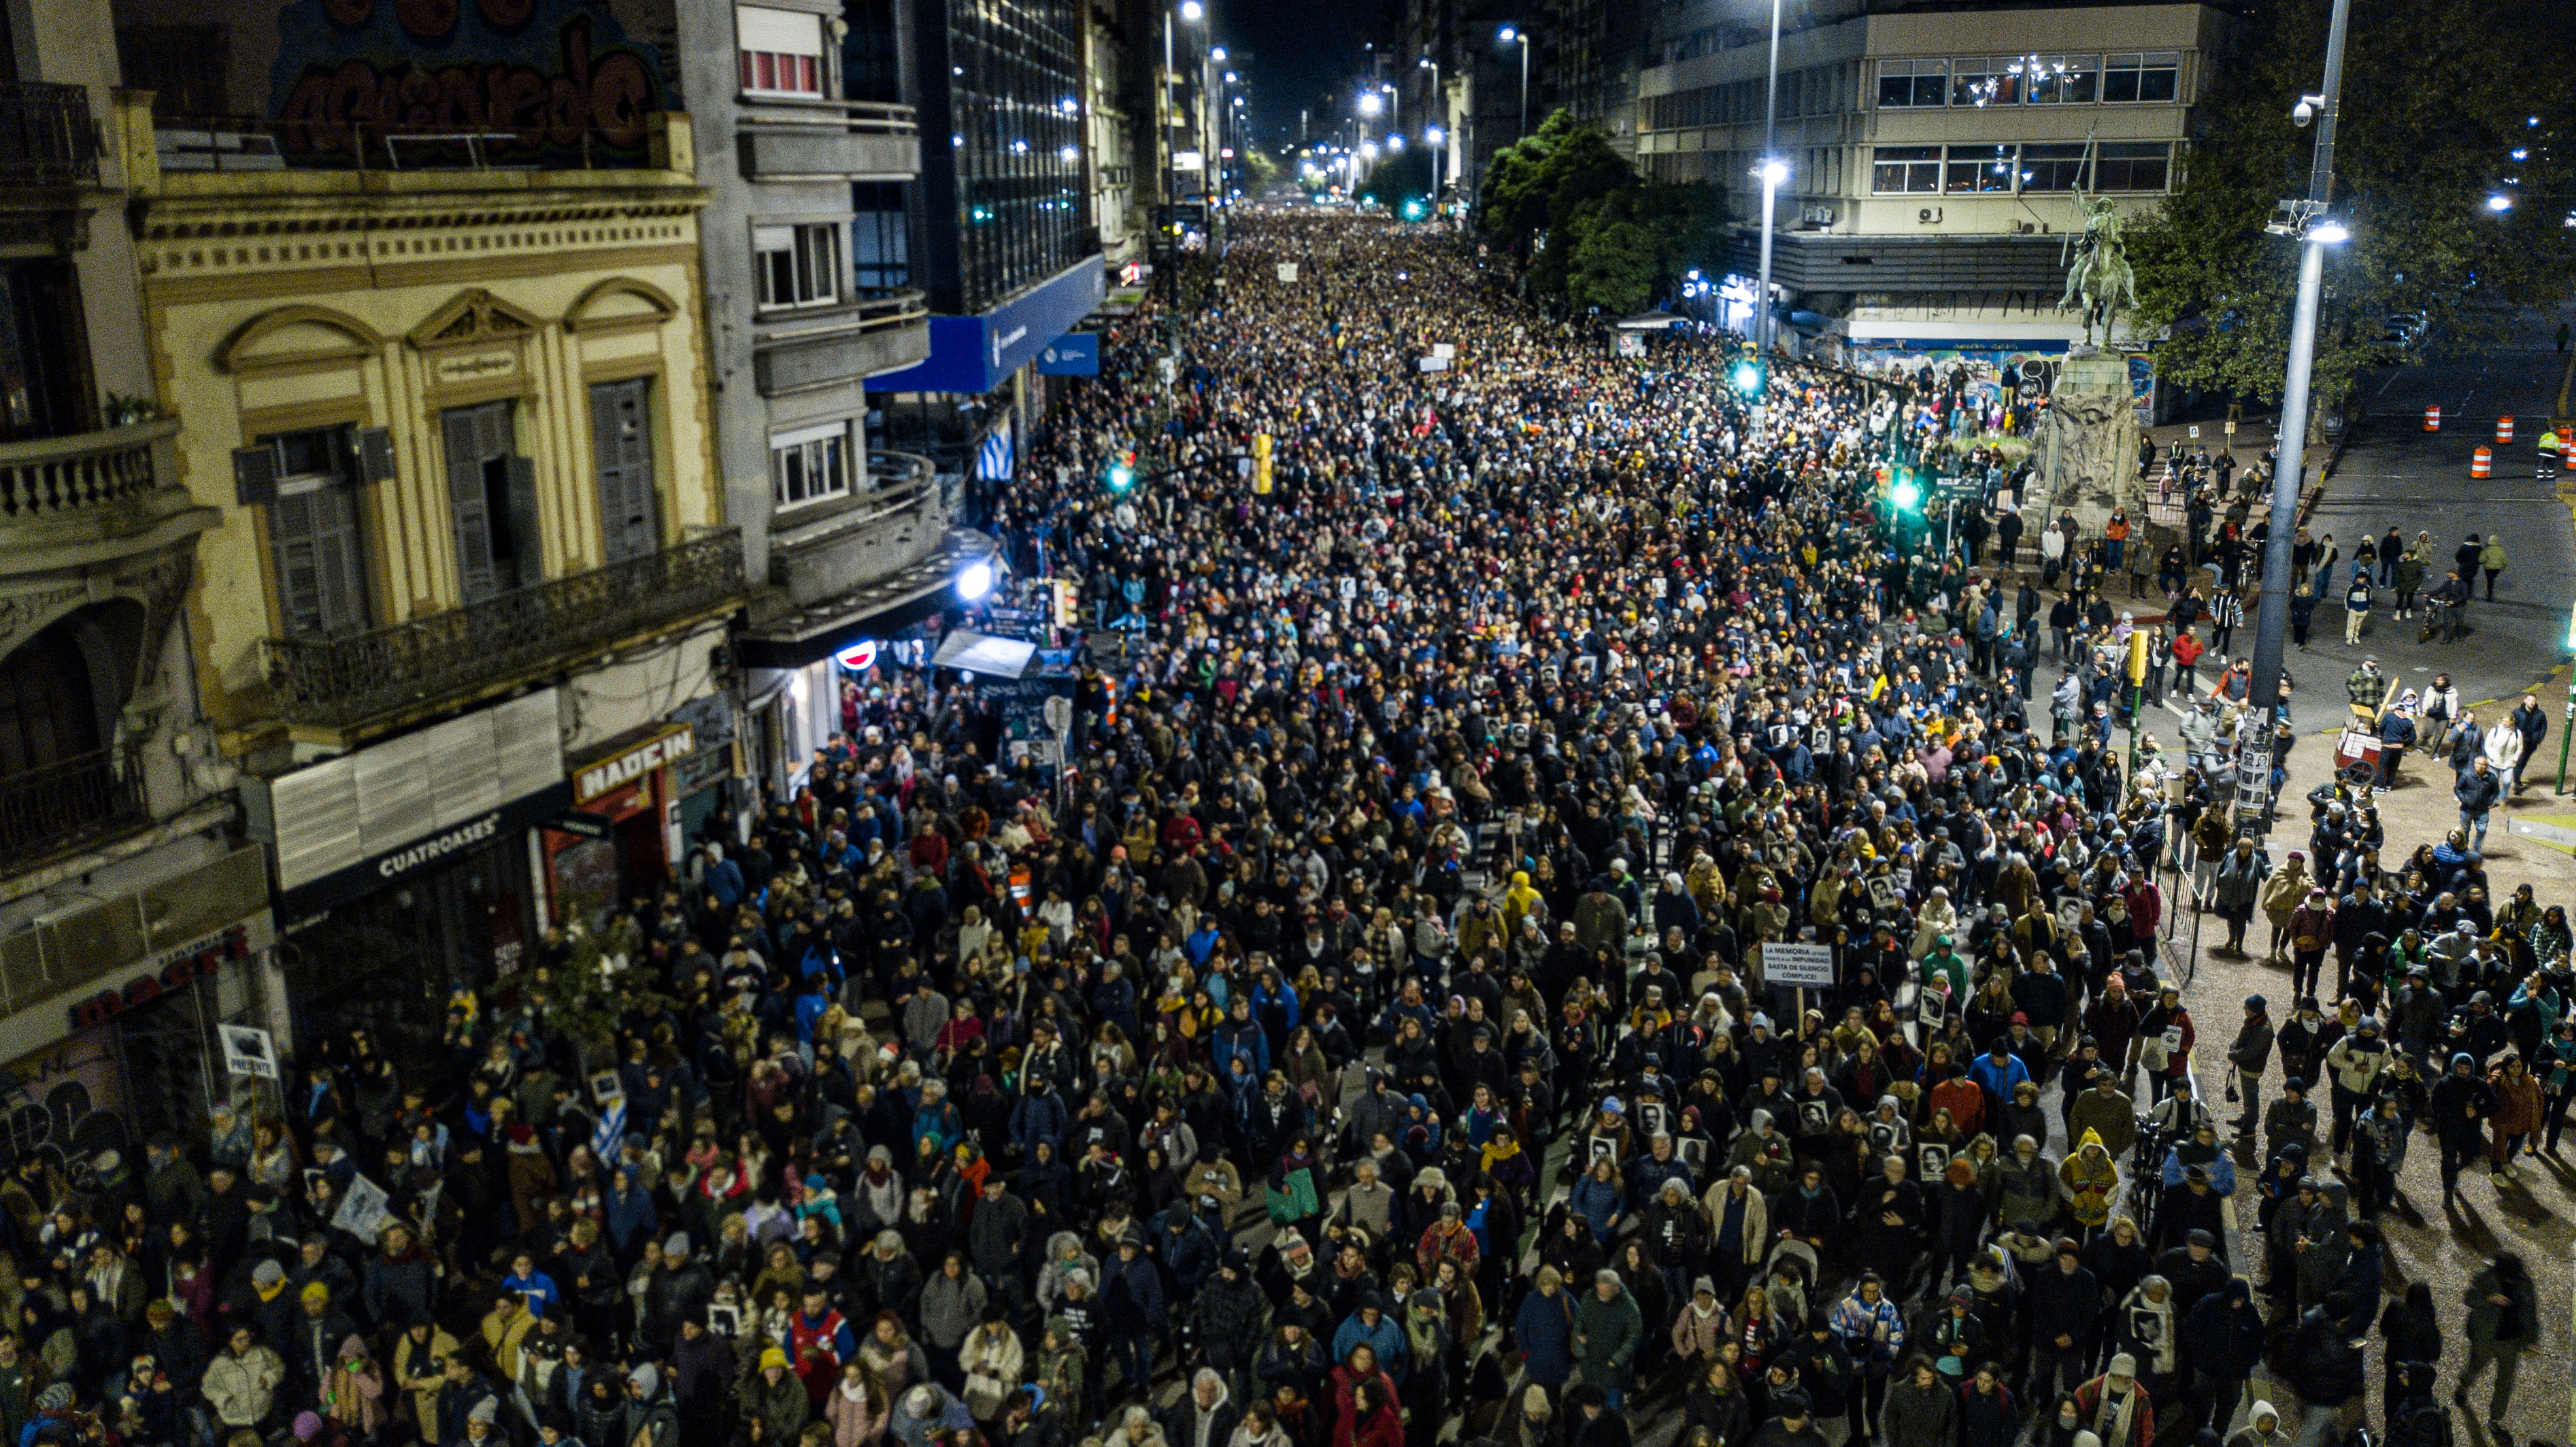 Marchando en silencio, Uruguay vuelve a exigir respuestas sobre sus  desaparecidos - Infobae